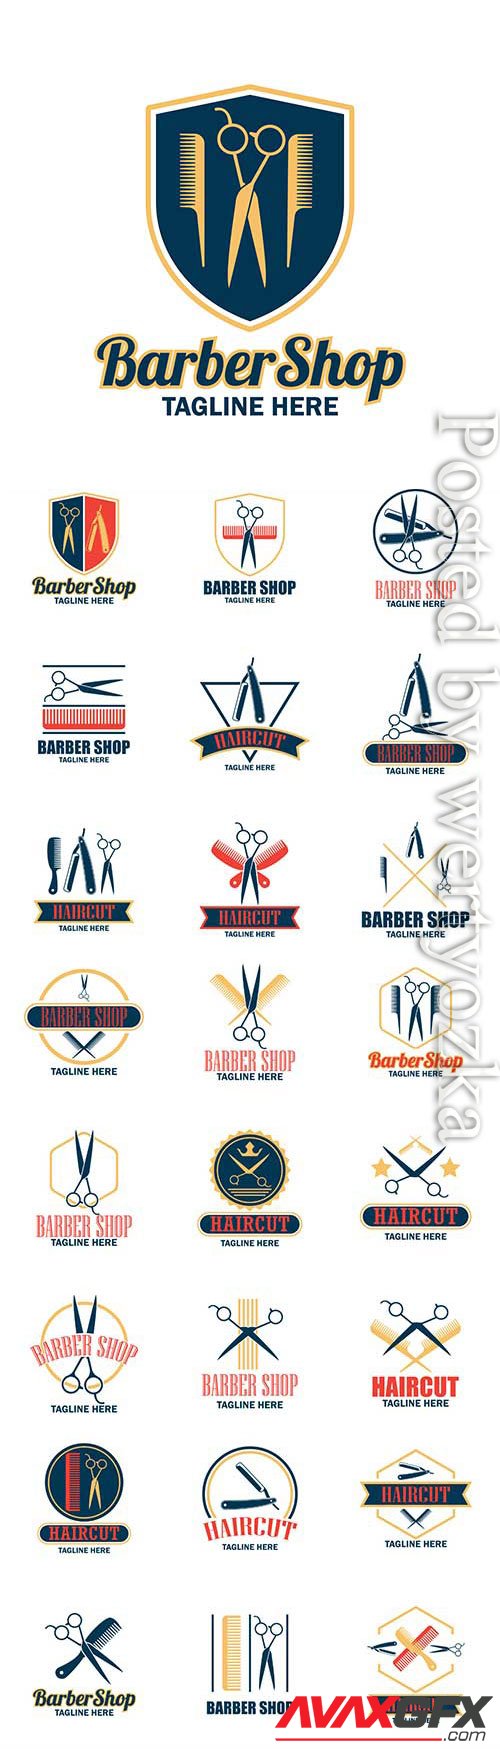 Barber shop logos in vector